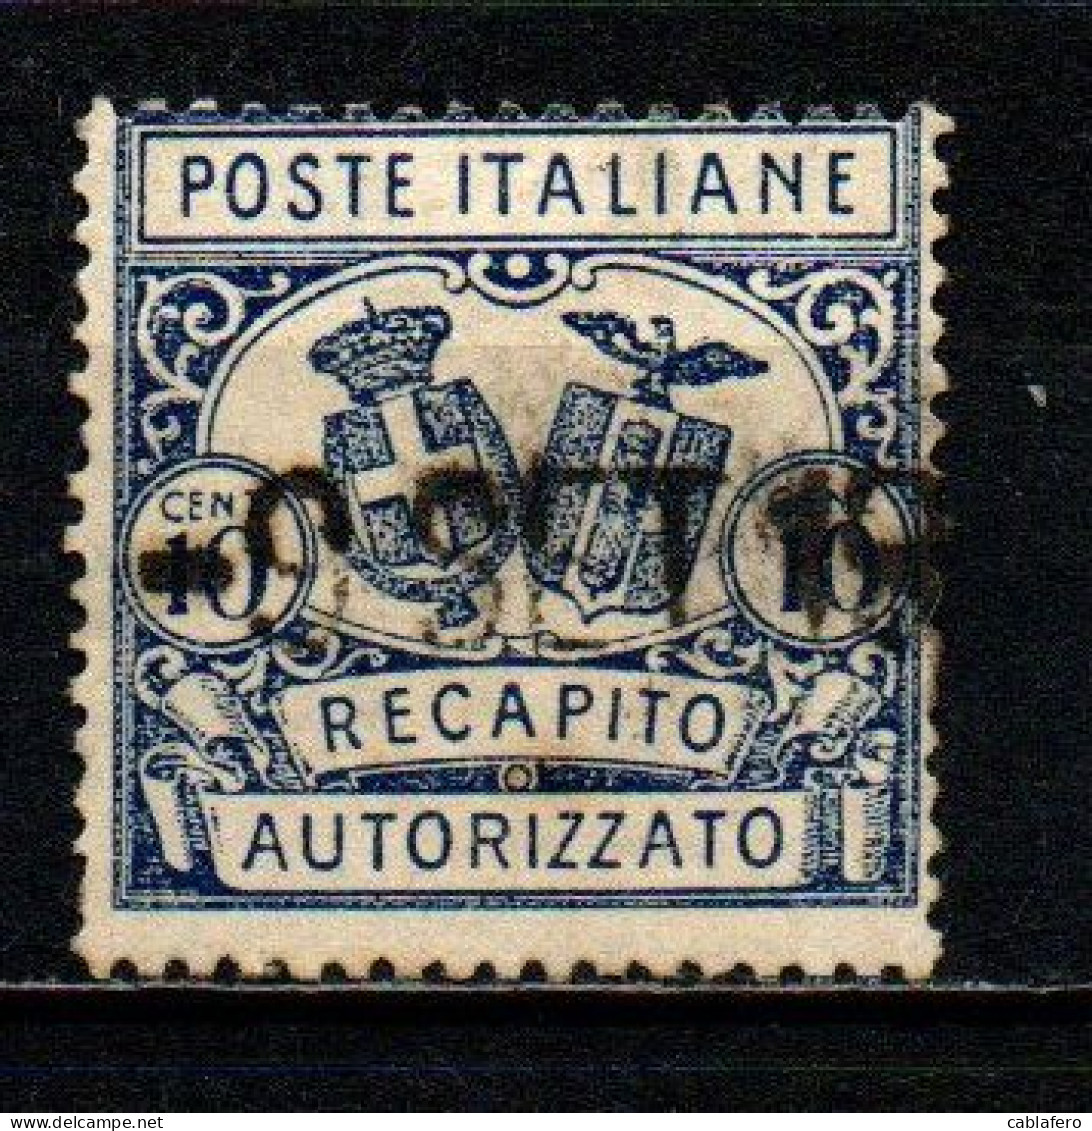 ITALIA REGNO - 1928 - RECAPITO AUTORIZZATO - STEMMI IN OVALE - DENTELLATURA 14 -  USATO - Pneumatische Post